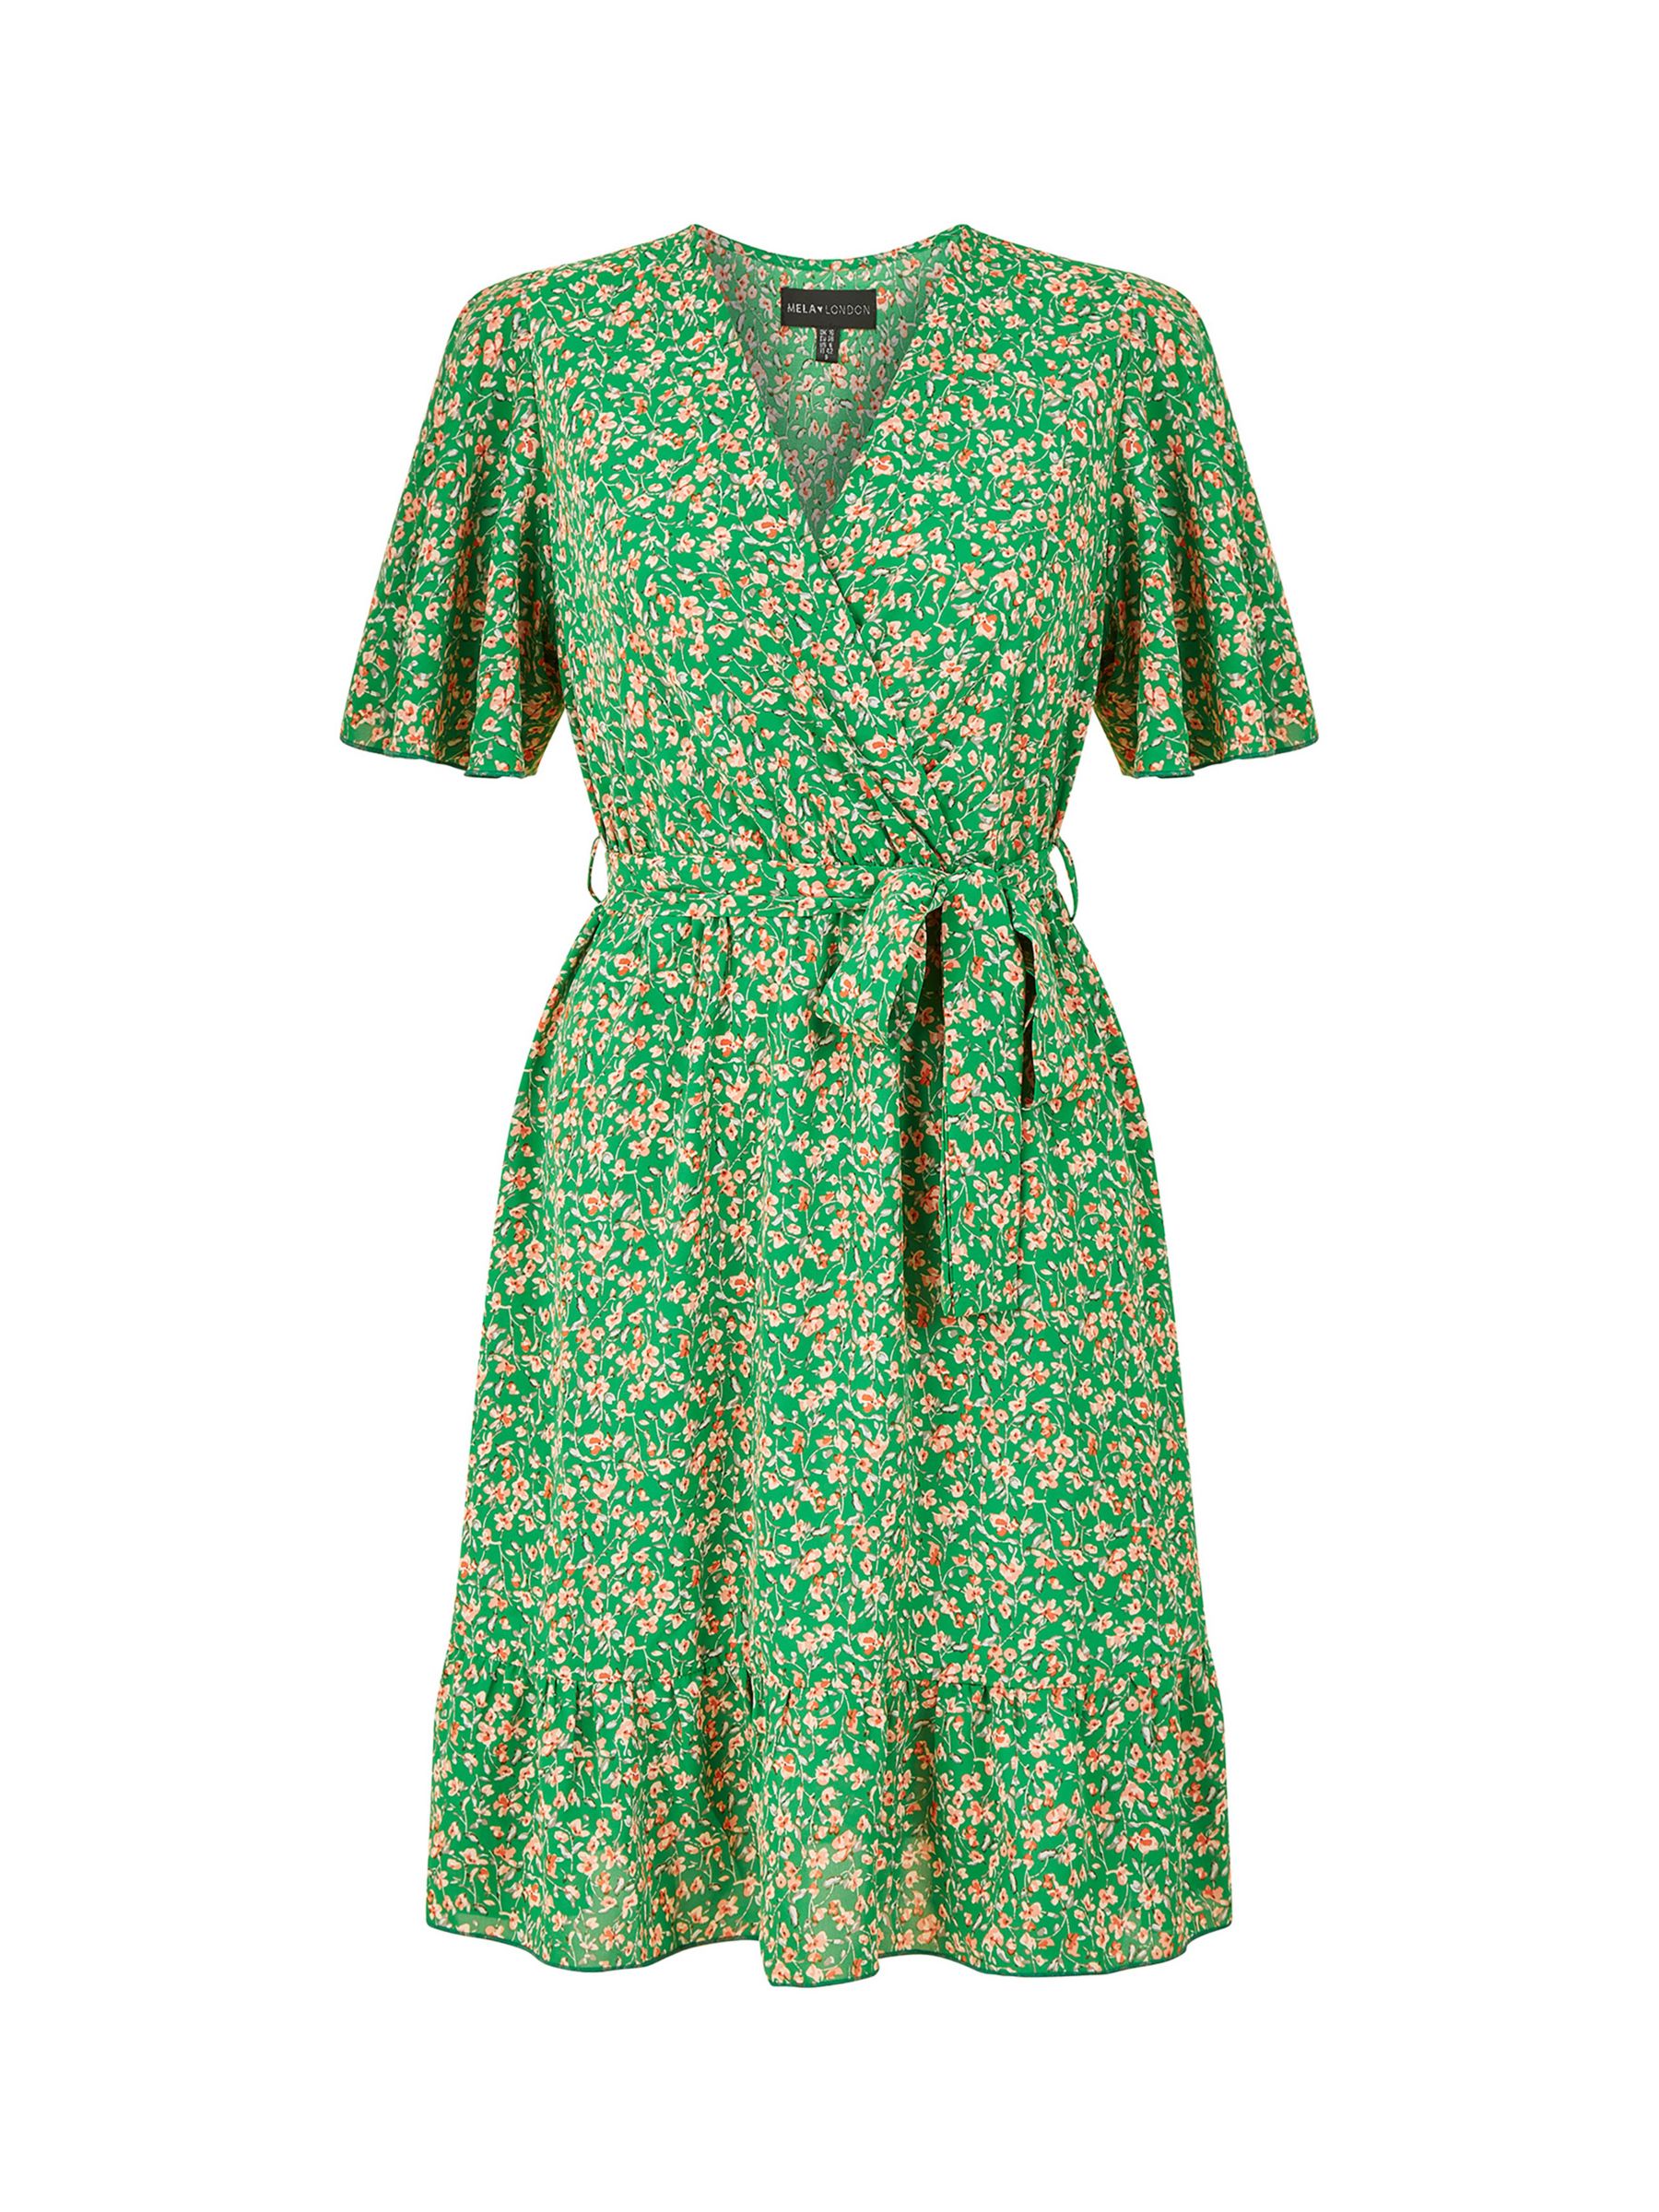 Yumi Mela London Ditsy Floral Wrap Dress, Green, 8